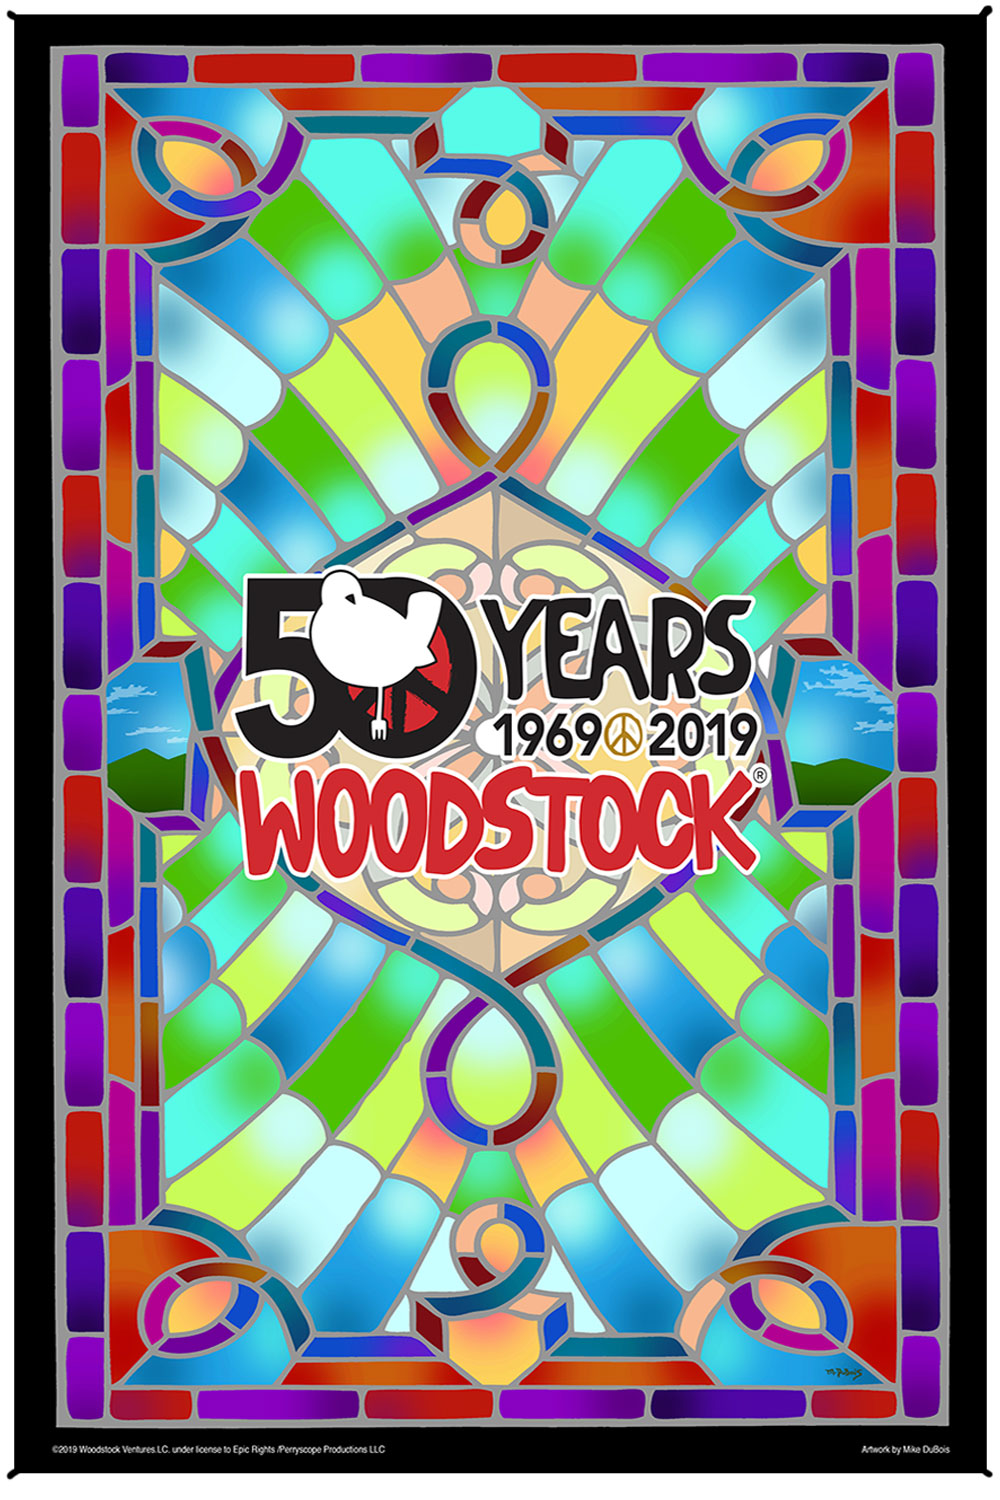 Woodstock vitraji 50. obljetnice, opojna umjetnička print tapiserija 53" x 85" s BESPLATNIM 3-D naočalama 